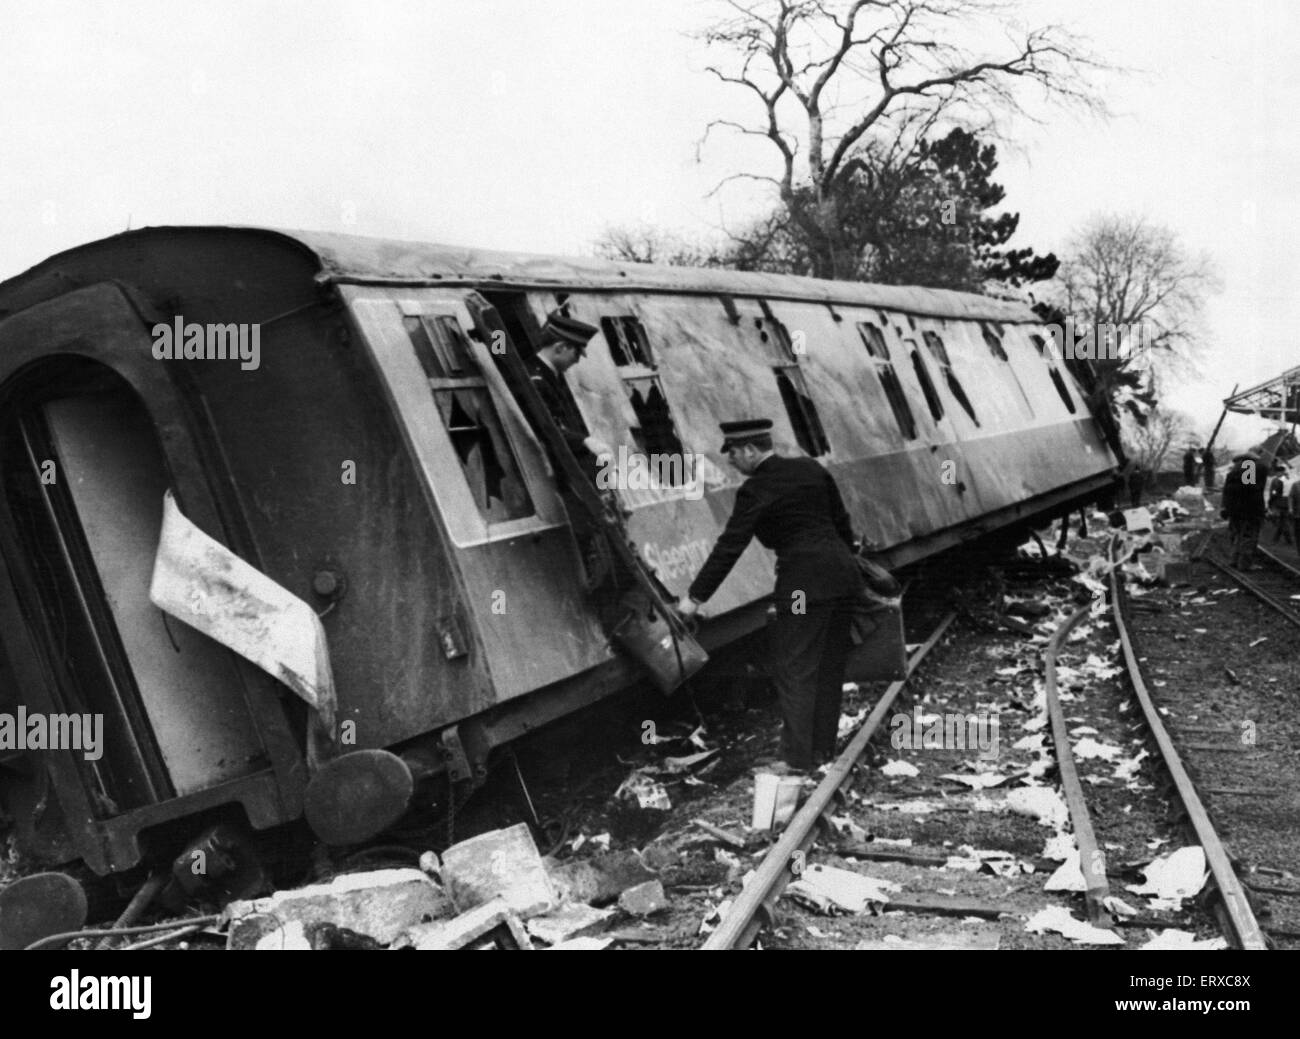 Morpeth Rail Crash auf 7 kann 1969, die eine Richtung Norden Schläfer Expresszug von London nach Aberdeen auf der Morpeth entgleist Kurve. Sechs Personen wurden getötet, 21 wurden verletzt und das Dach in nördlicher Richtung Bahnsteig wurde beschädigt.  Polizei sind in unserem Bild entfernen Gepäck von einem der zerstörten Sleeper Wagen gesehen. Stockfoto